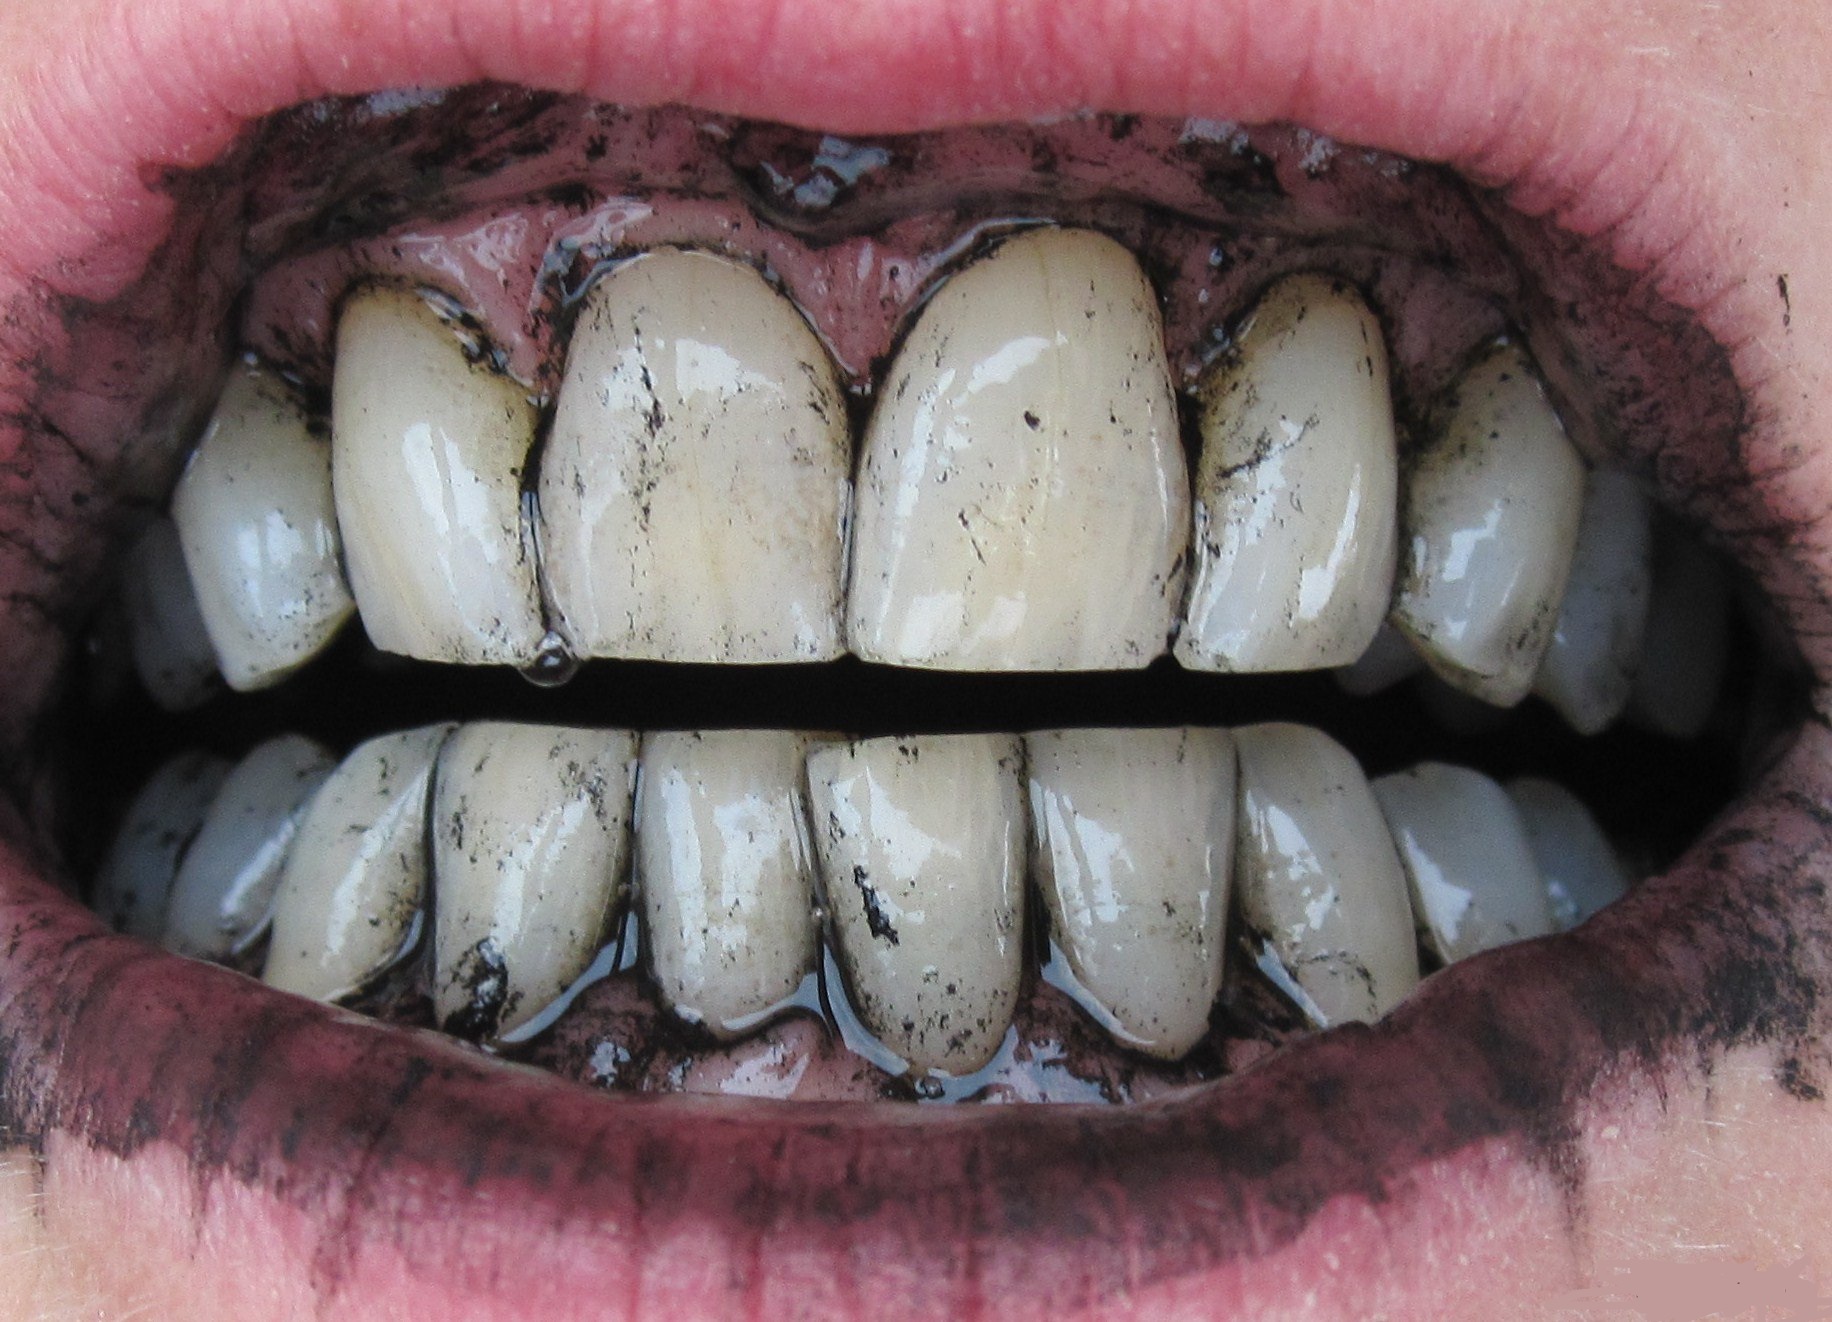 фото черных зубов у детей